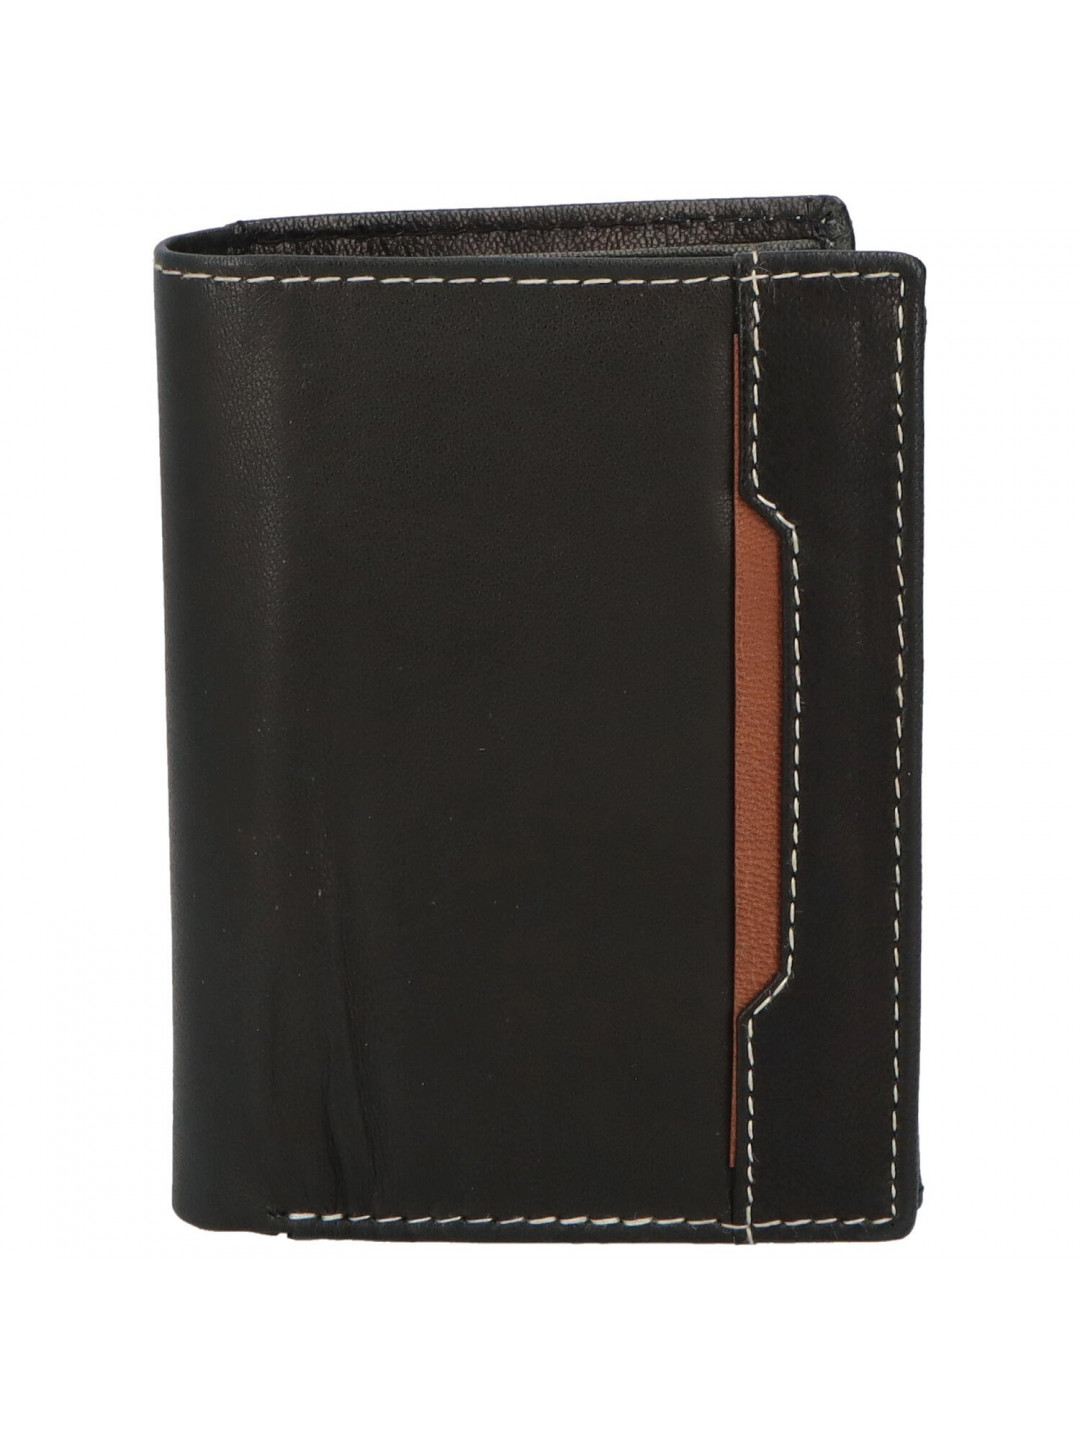 Trendová pánská kožená peněženka Vero černo – hnědá